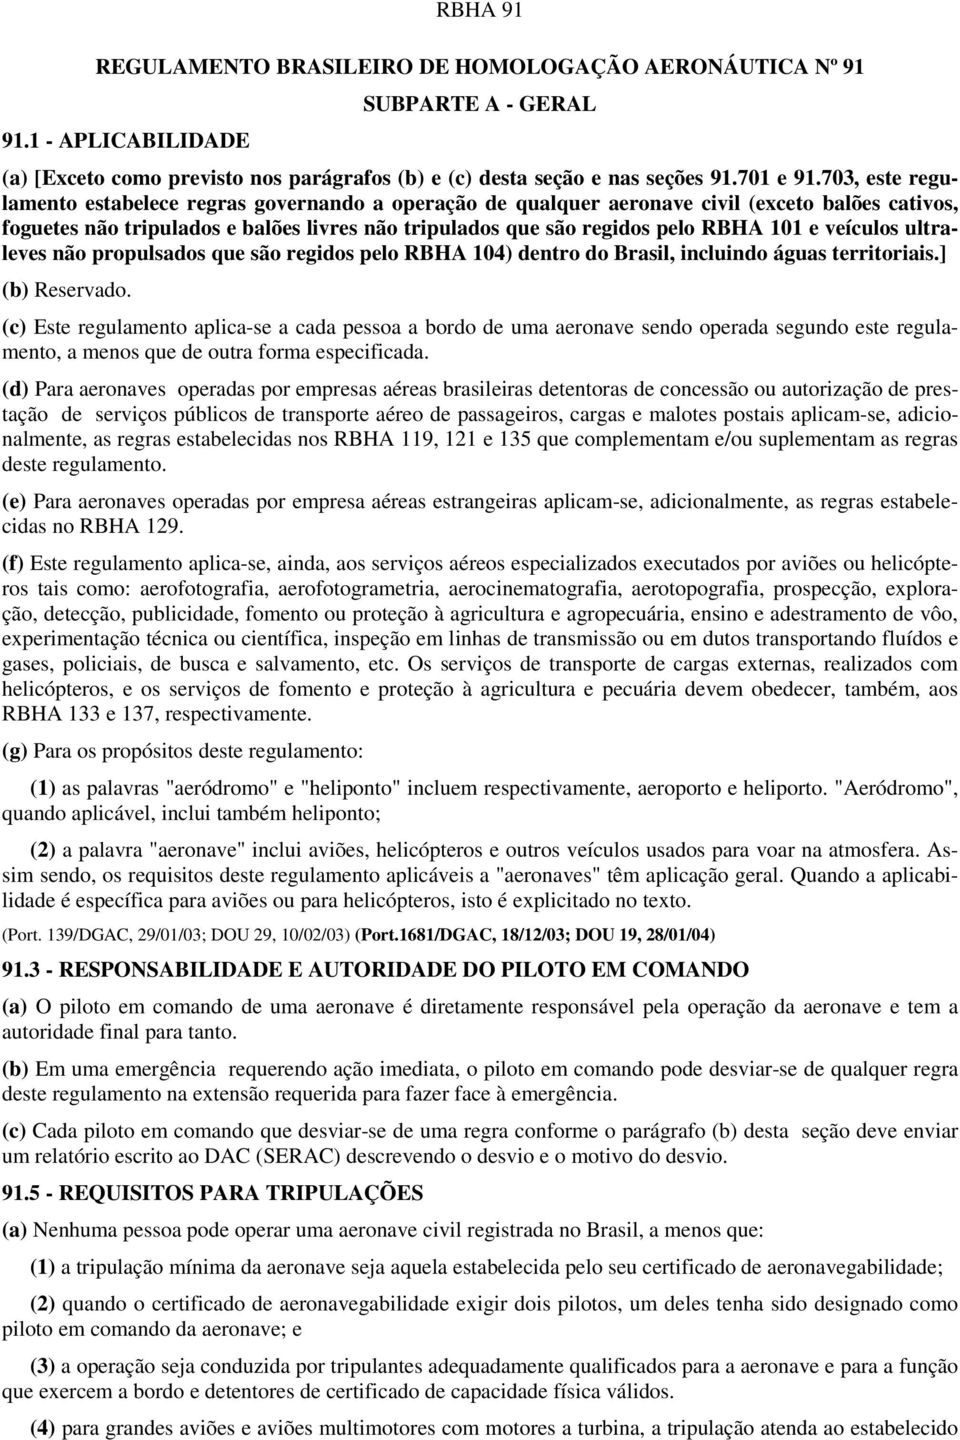 veículos ultraleves não propulsados que são regidos pelo RBHA 104) dentro do Brasil, incluindo águas territoriais.] (b) Reservado.